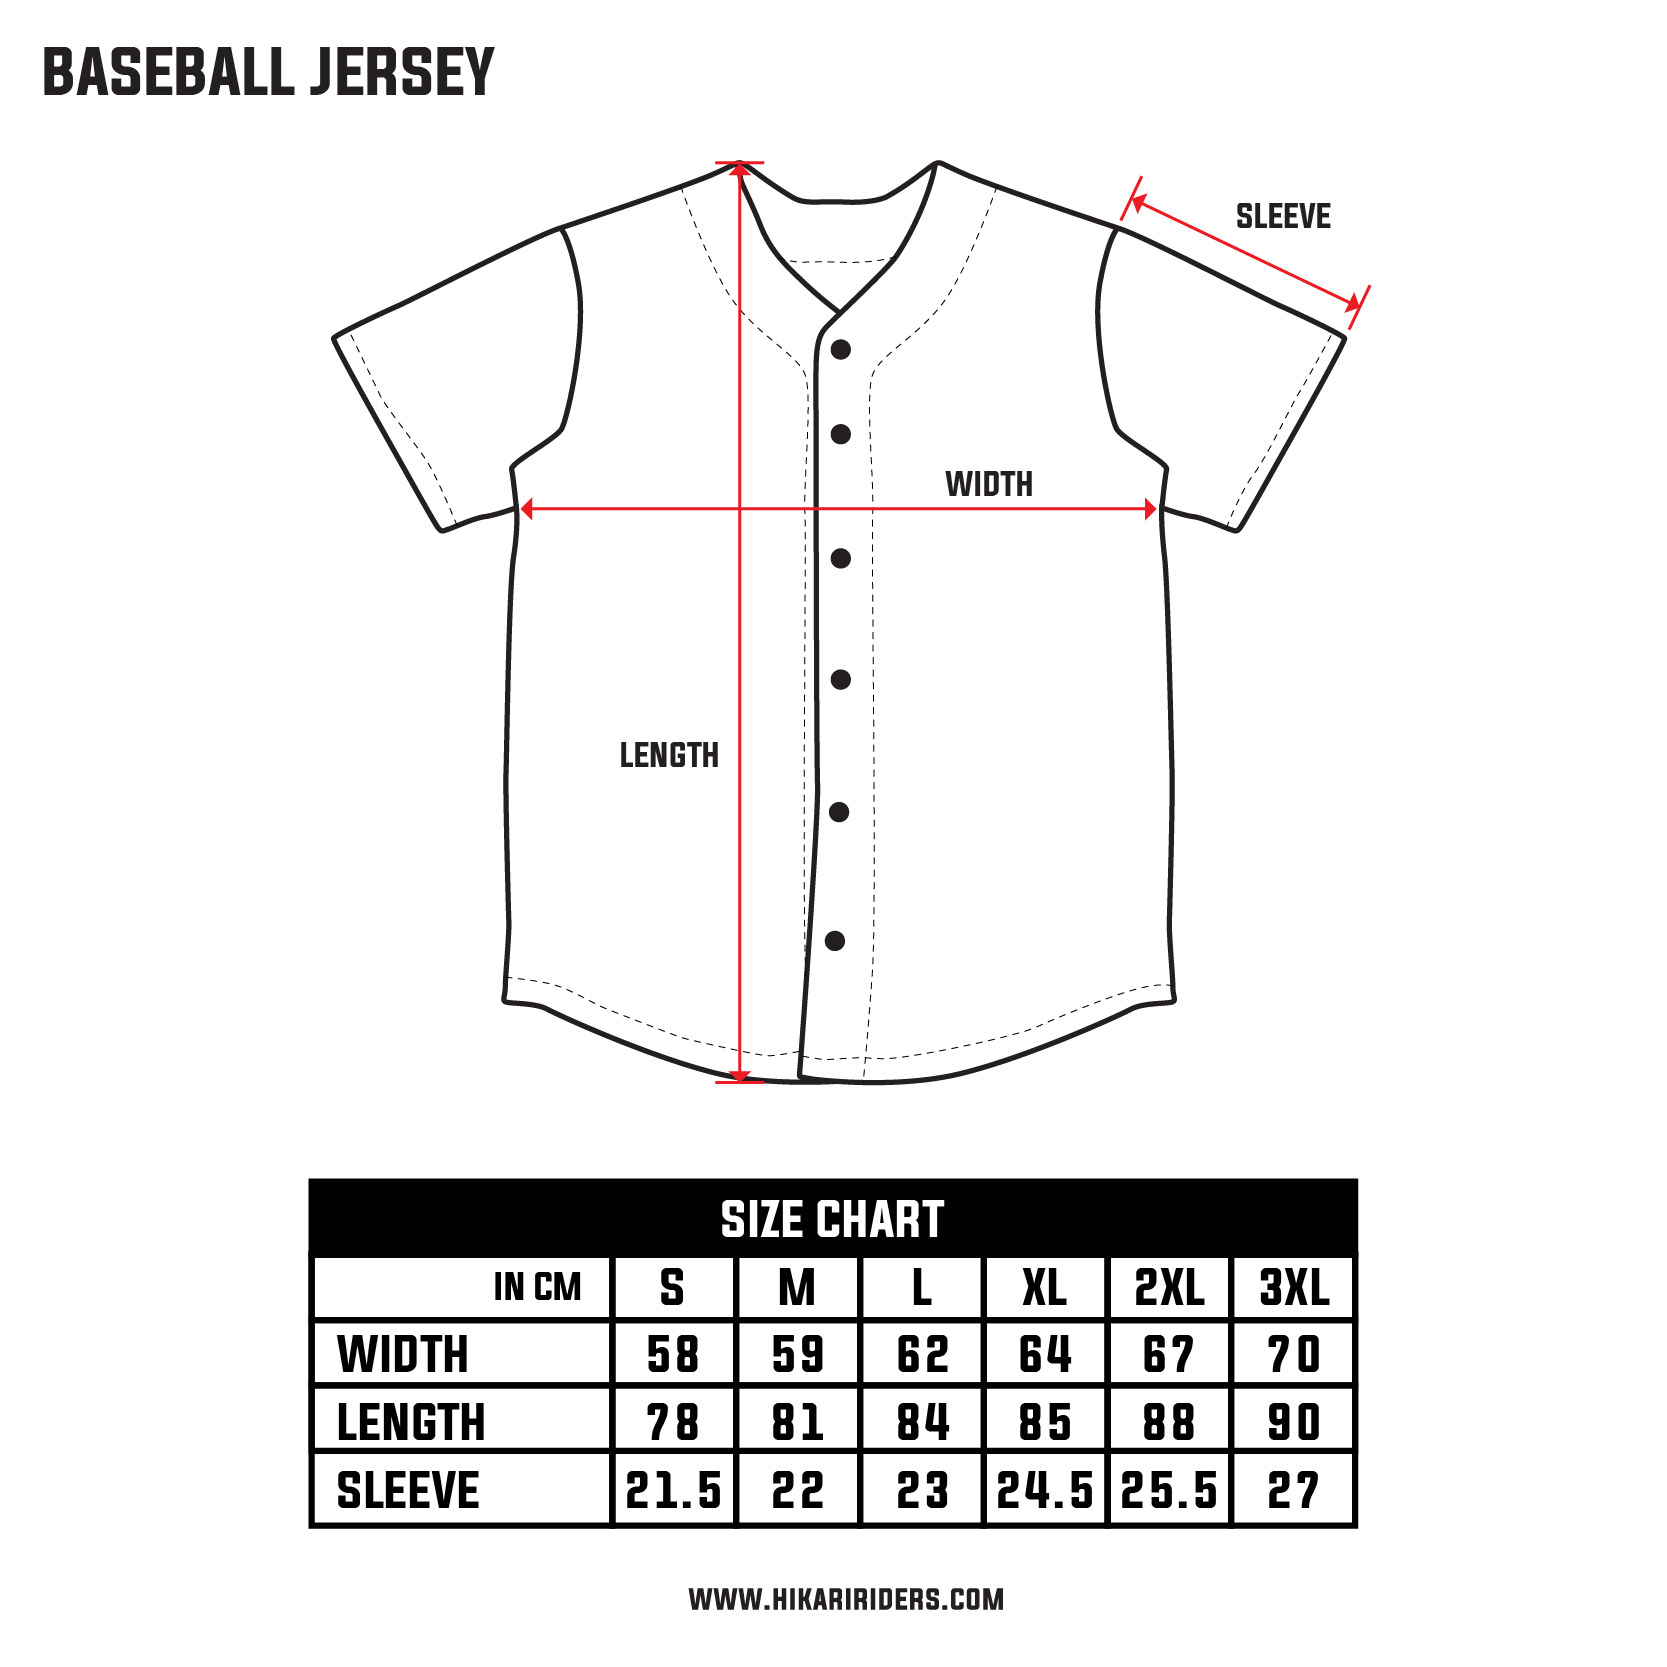 Size Chart (Baseball Jersey)